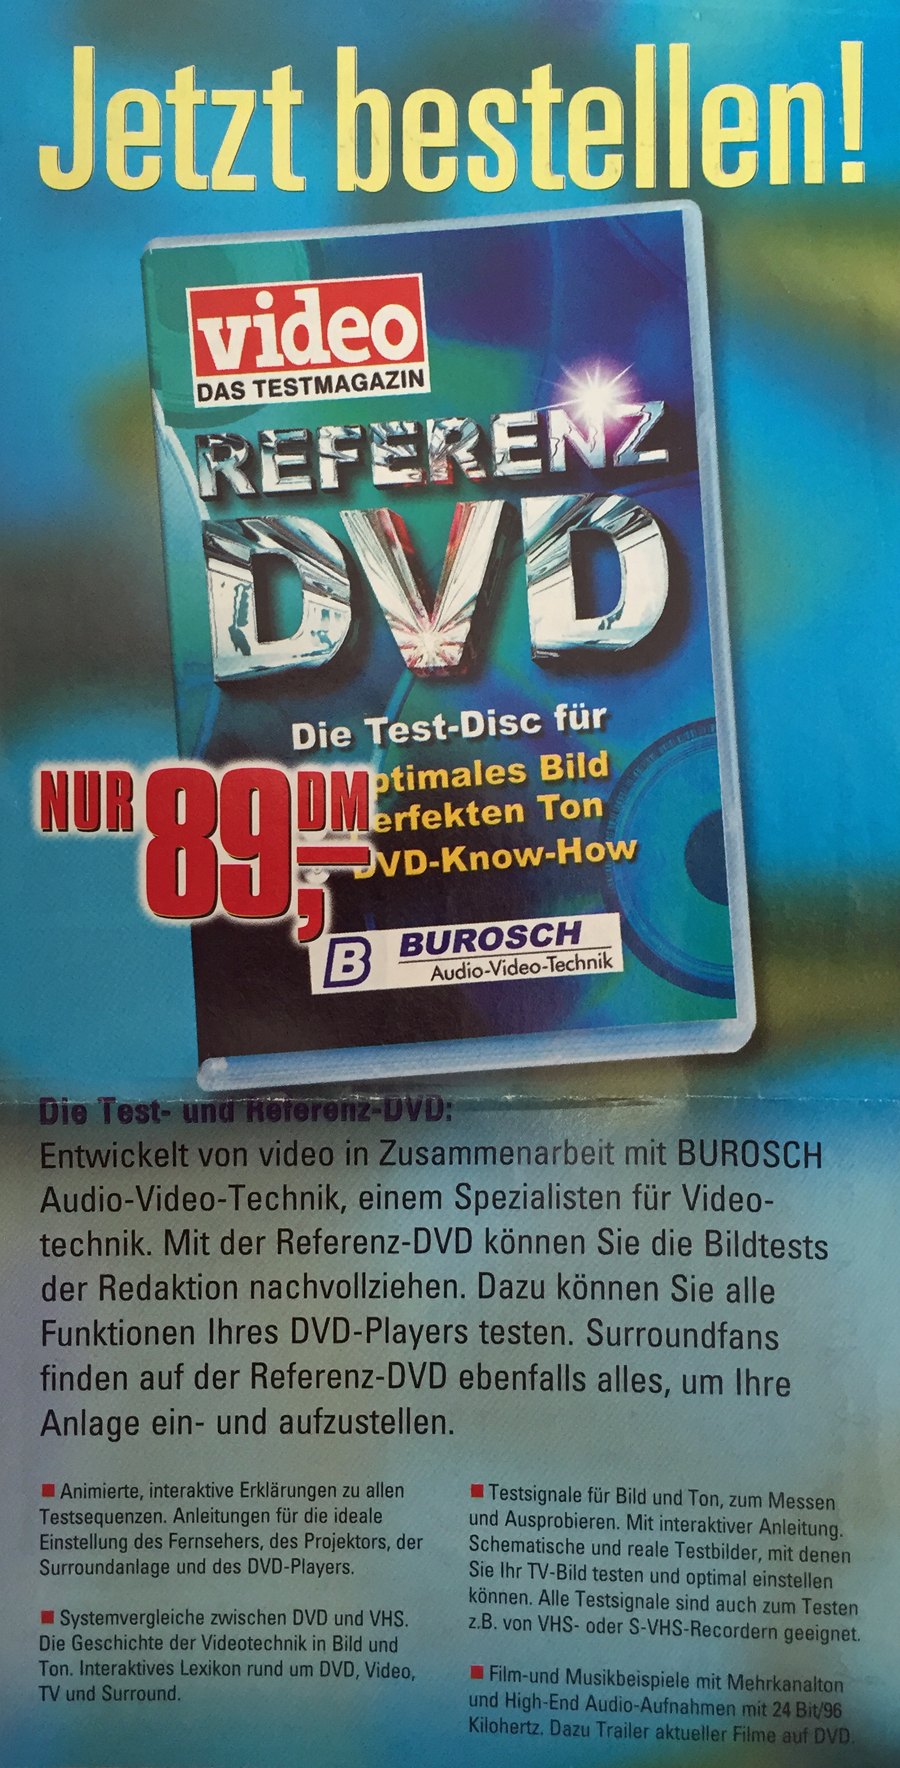 Burosch, video Das Testmagazin: Werbeanzeige Referenz DVD